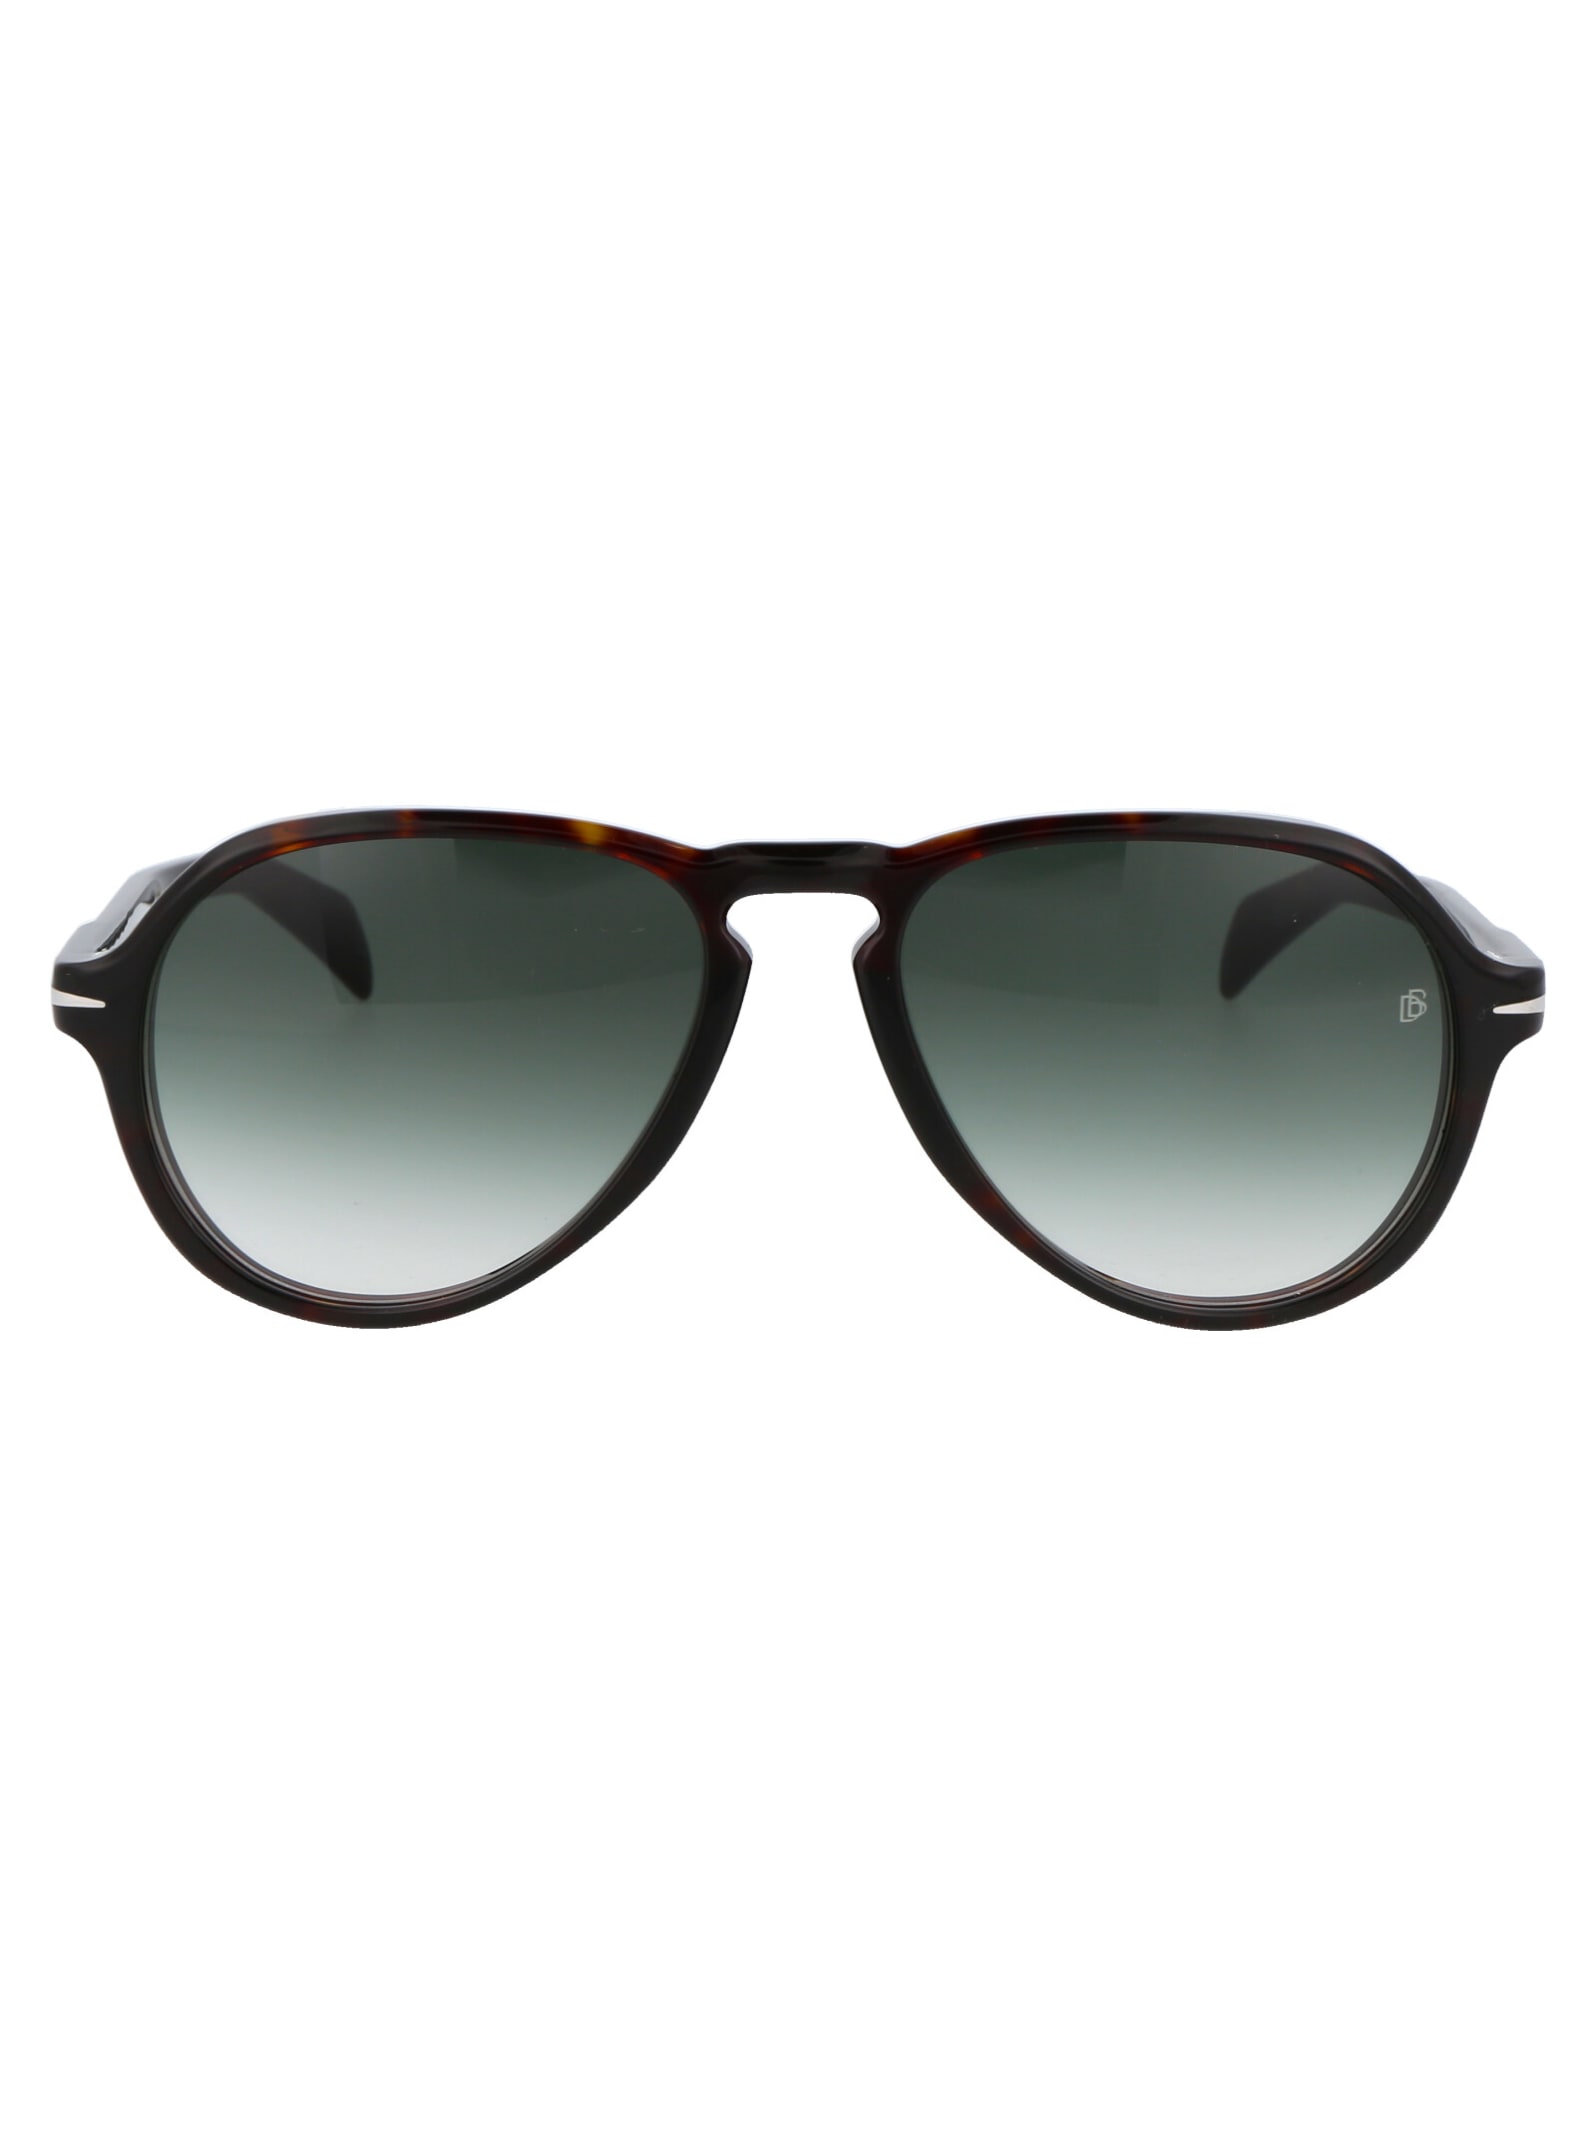 Db 7079/s Sunglasses